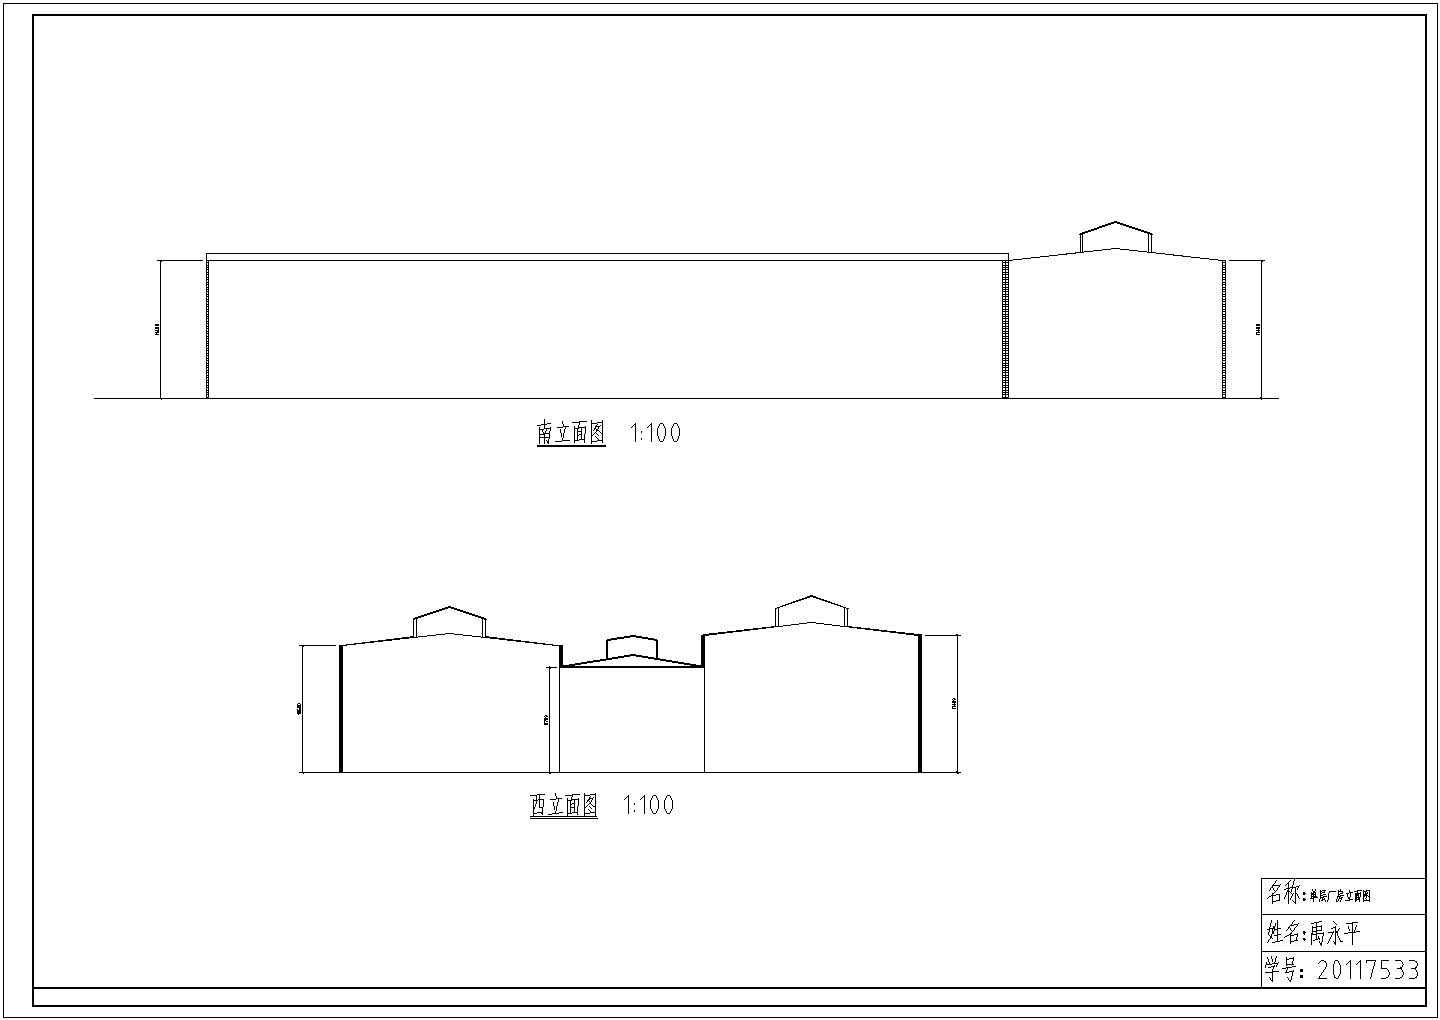 单层单跨工业厂房设计图纸(共4张)